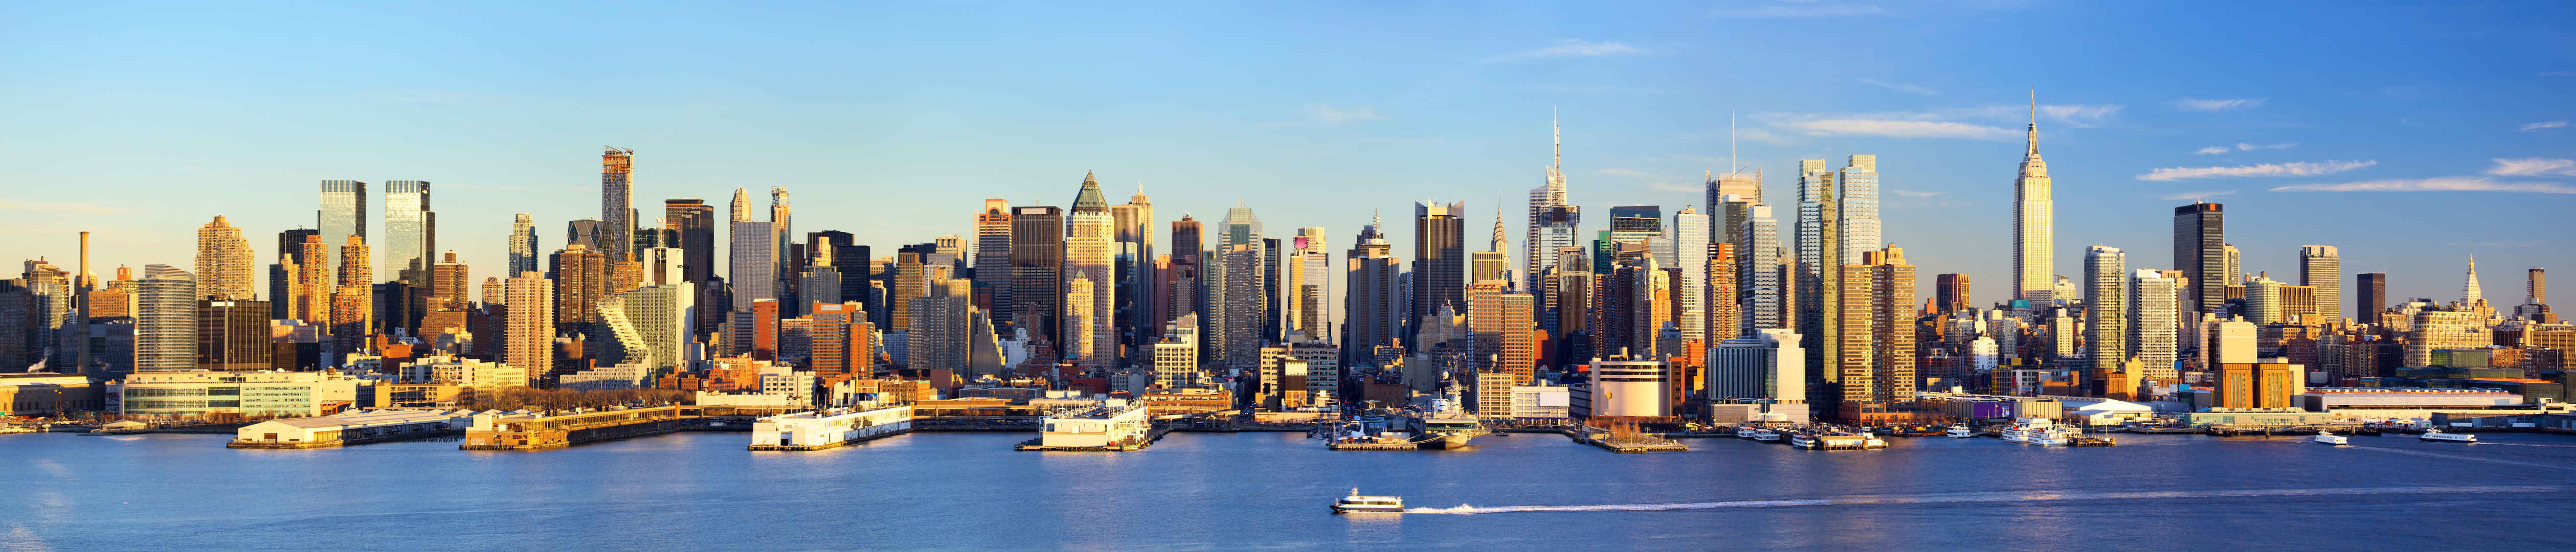 纽约海岸城市建筑全景图-